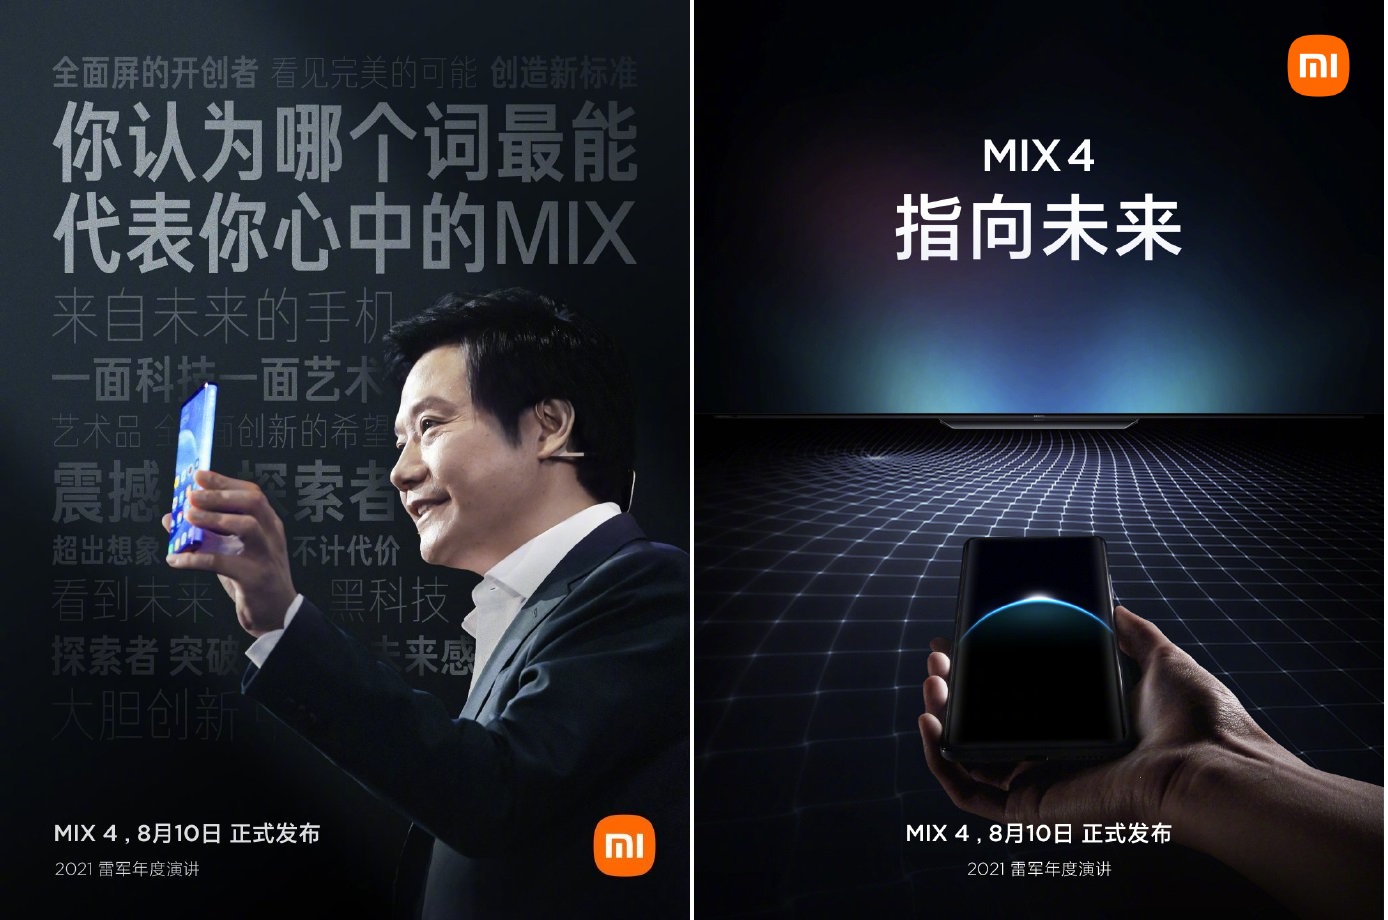 Pojawiło się oficjalne zdjęcie Xiaomi Mi Mix 4